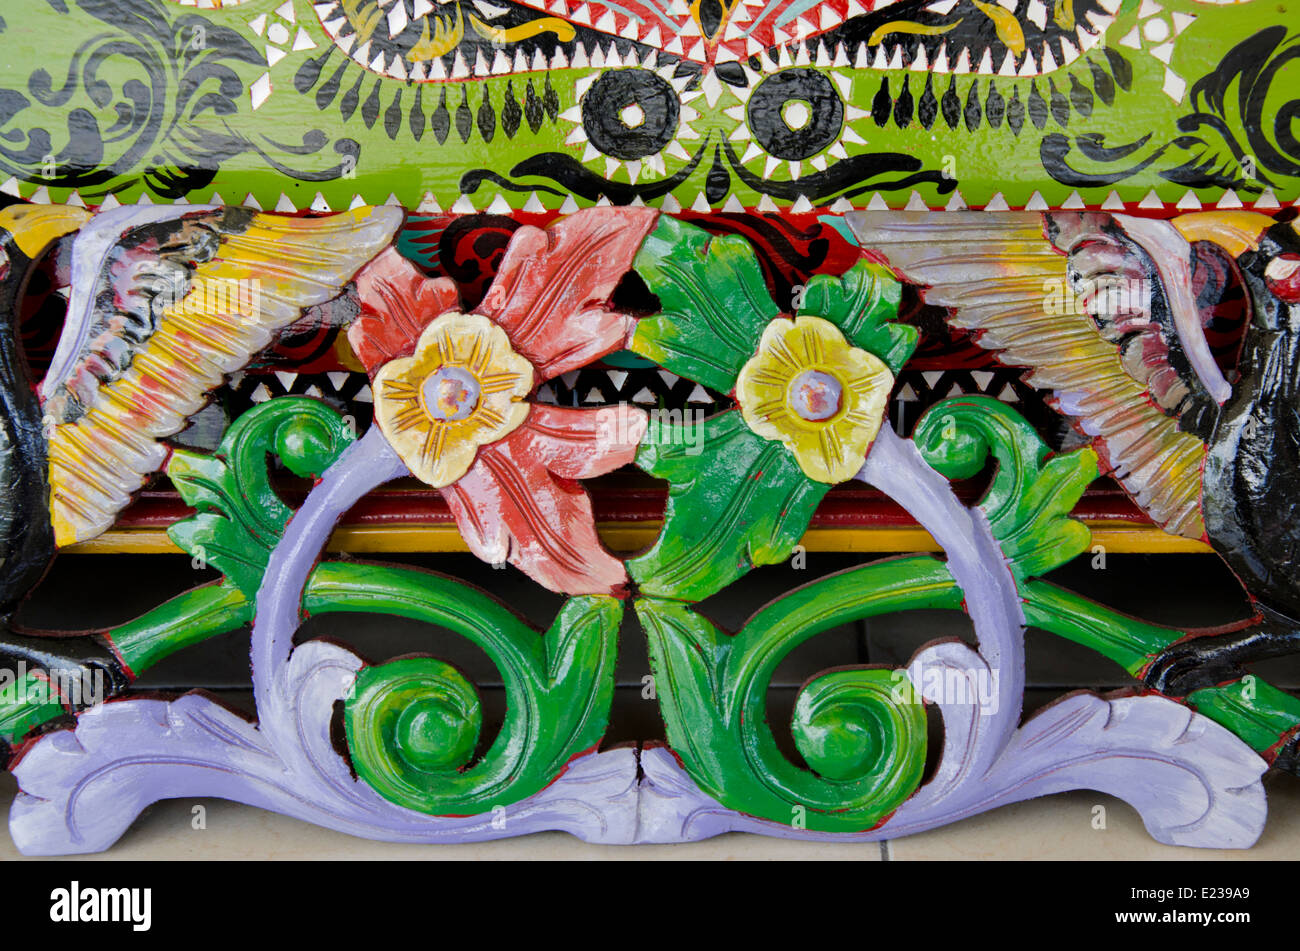 Indonesia, Isola di Lombok, Gunnungsari. Sesela il mercato dell'arte. Stile Indonesiano tradizionale dipinto di sculture in legno. Foto Stock